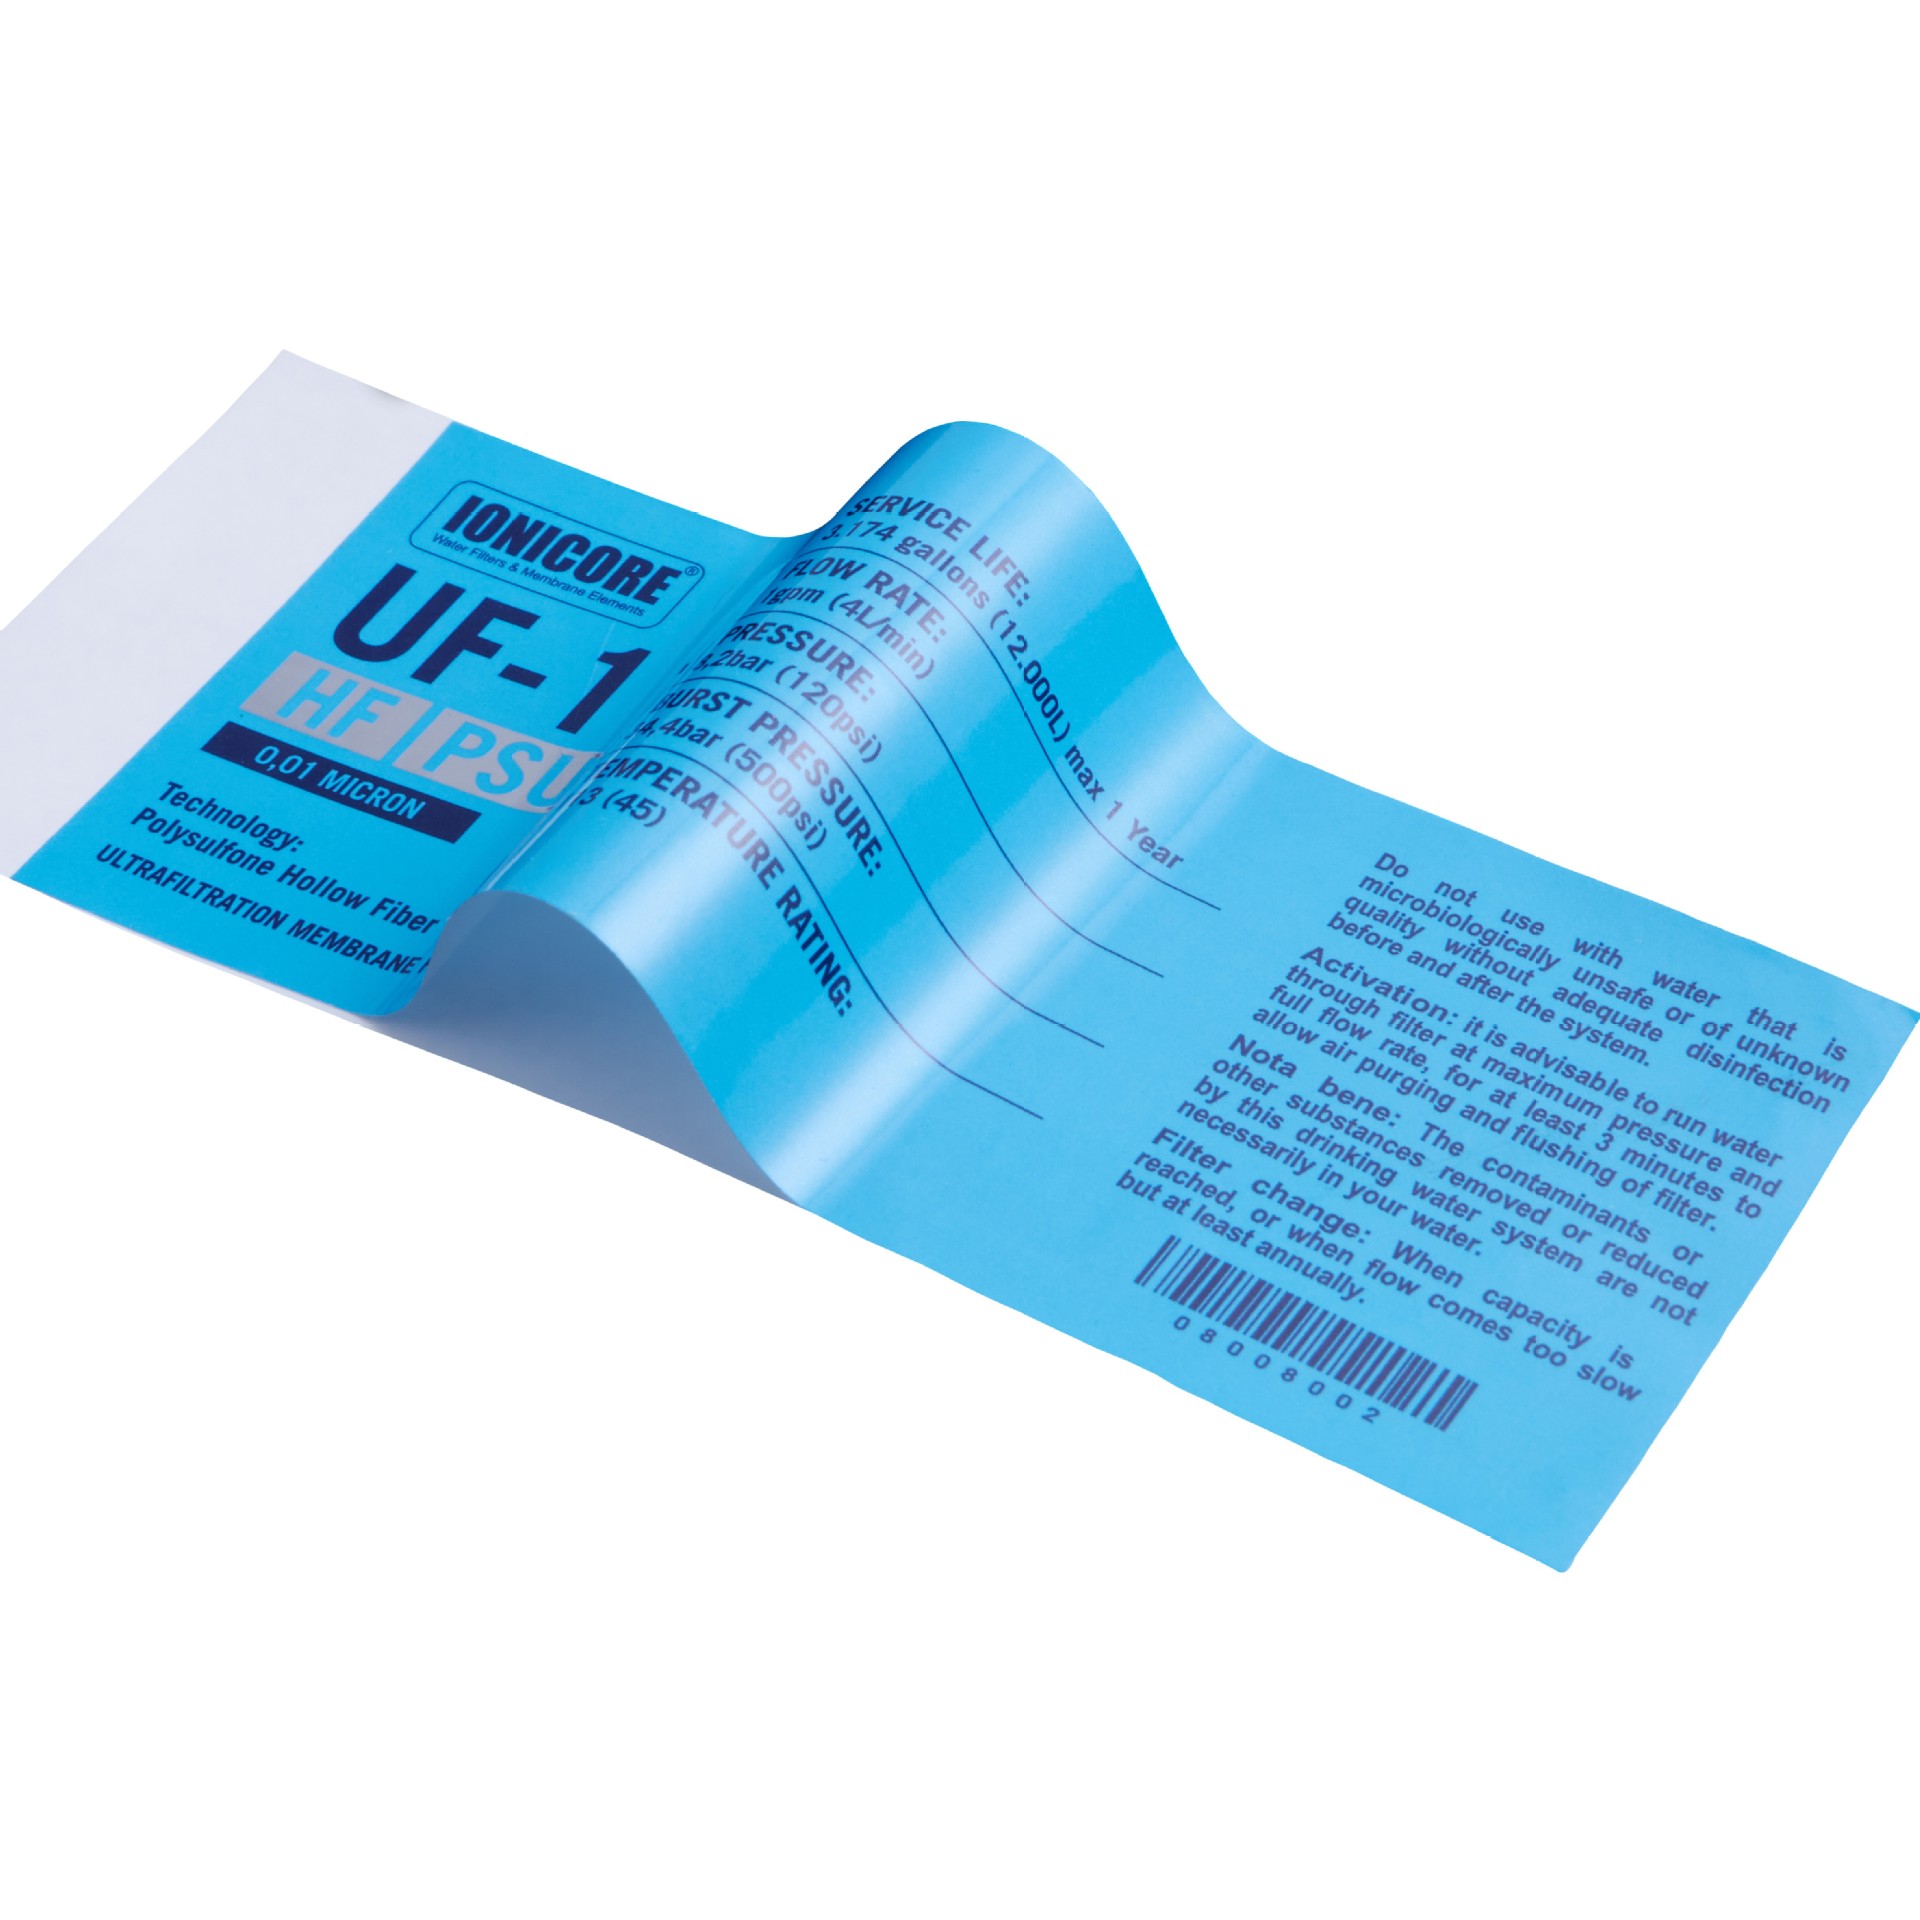 Autocolant imprimat personalizat Etichetă autocolantă albastră PVC impermeabilă Imagine prezentată